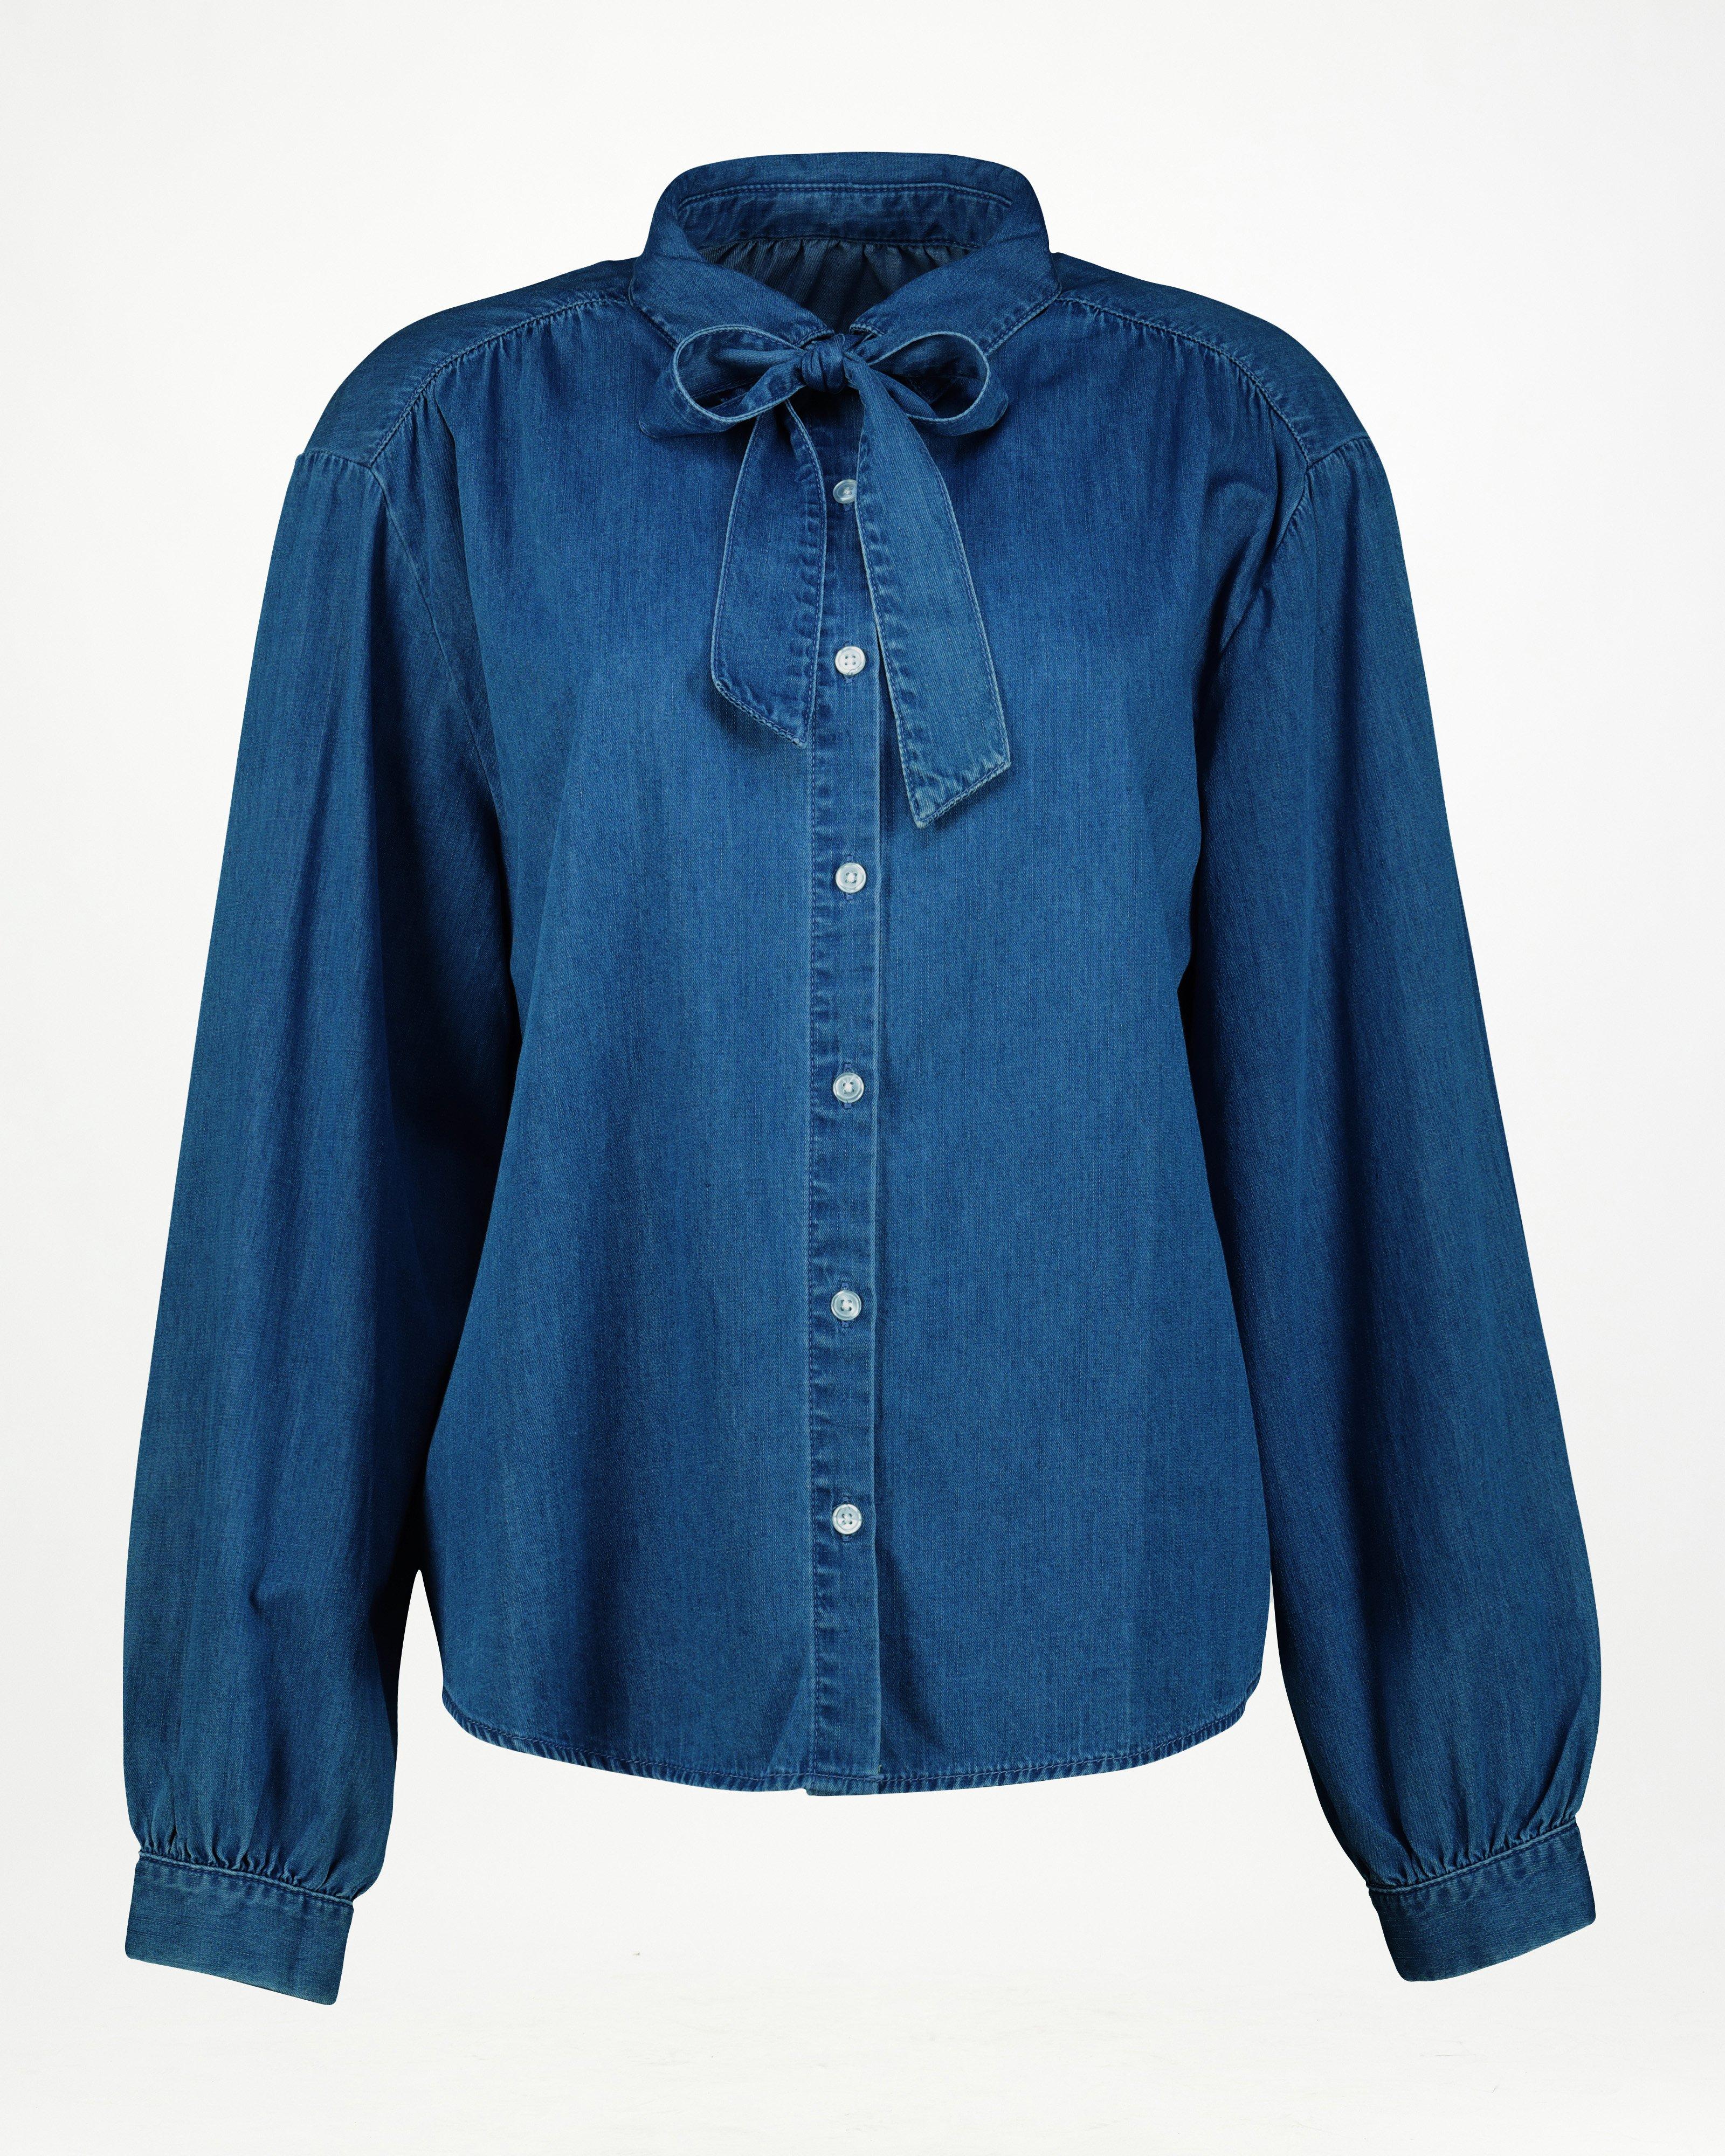 Zuria Denim Shirt -  Mid Blue